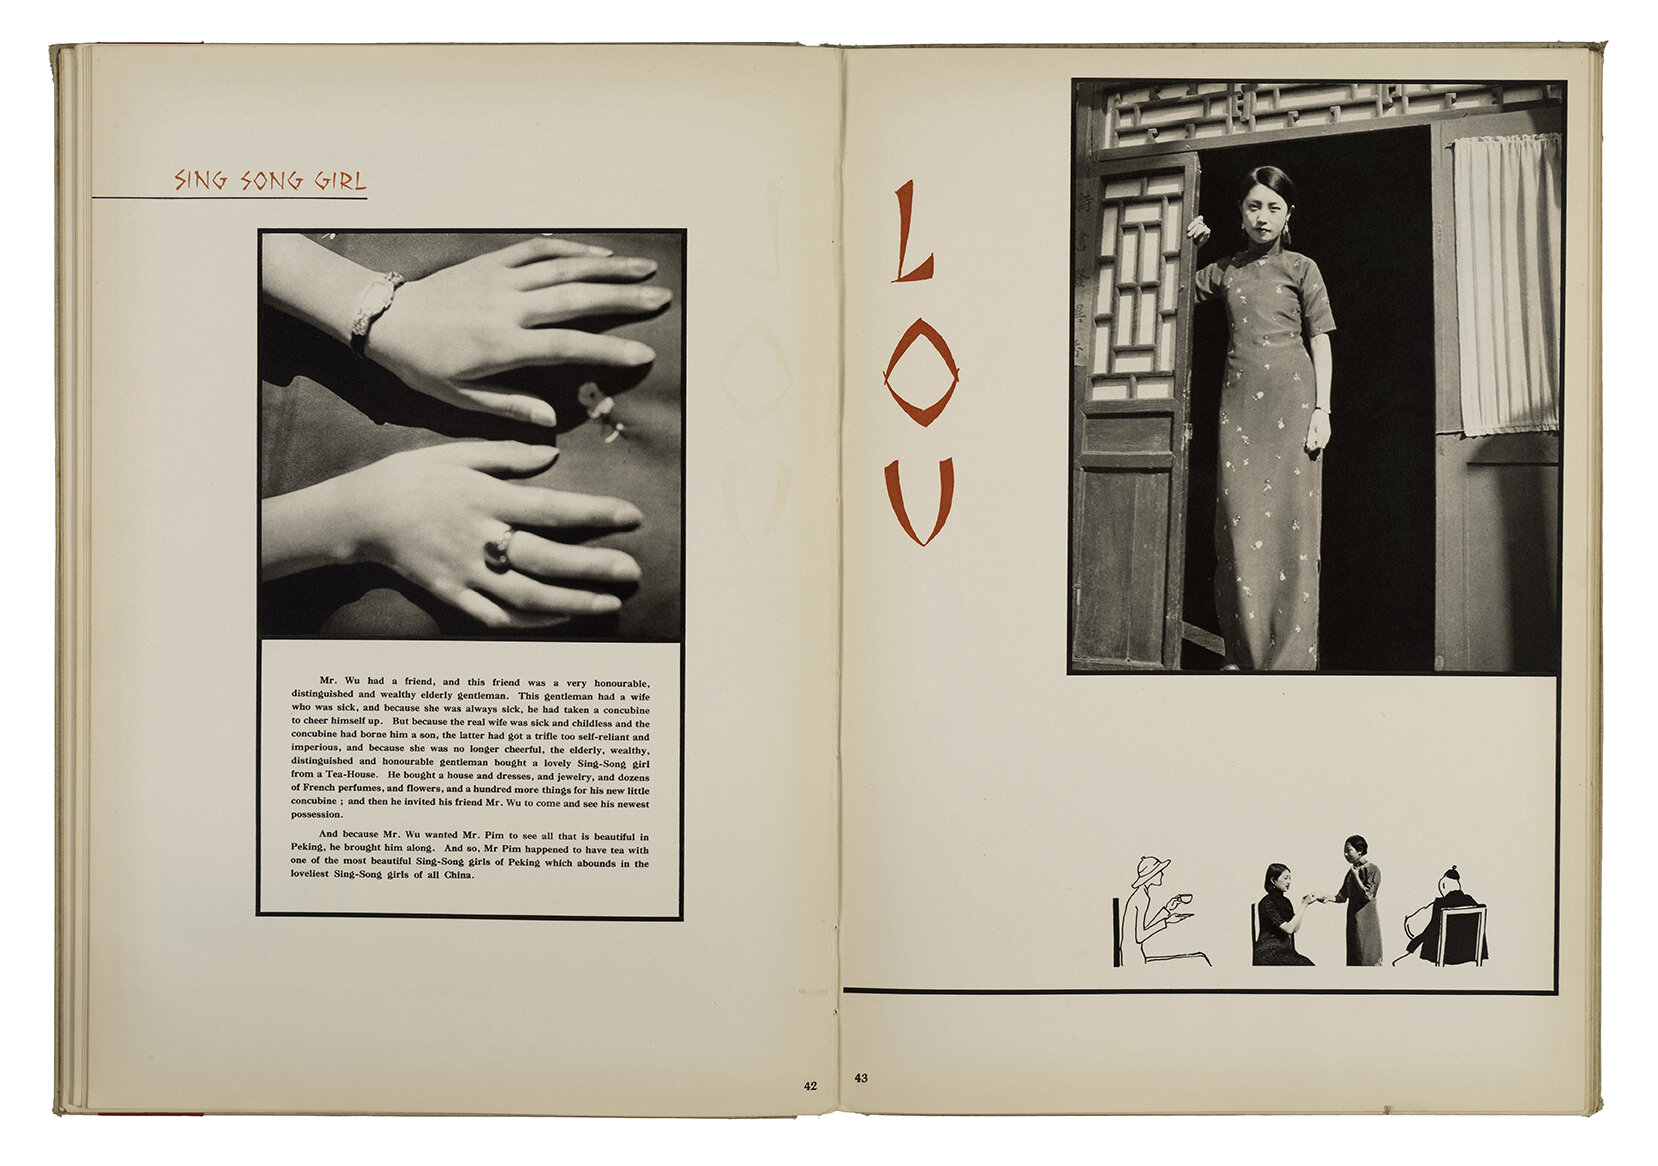 Foto15 Spread uit het boek Peking Studies 1934 lowres - Ellen Thorbecke |  - Ellen Thorbecke